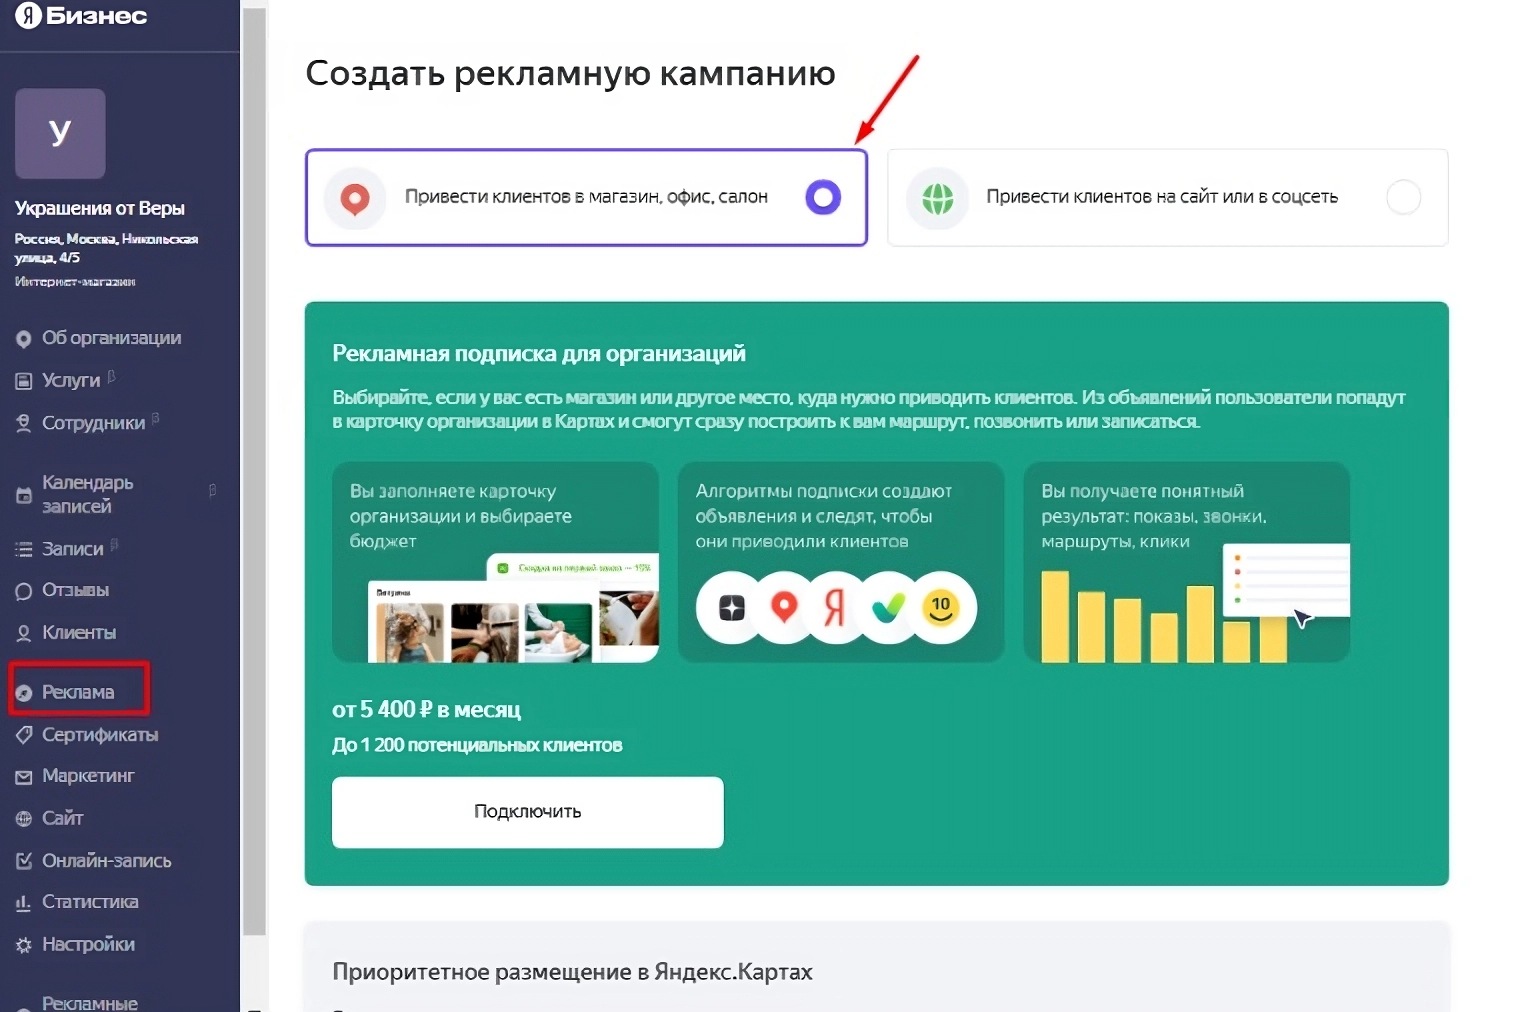 Рекламный канал - Яндекс.Бизнес